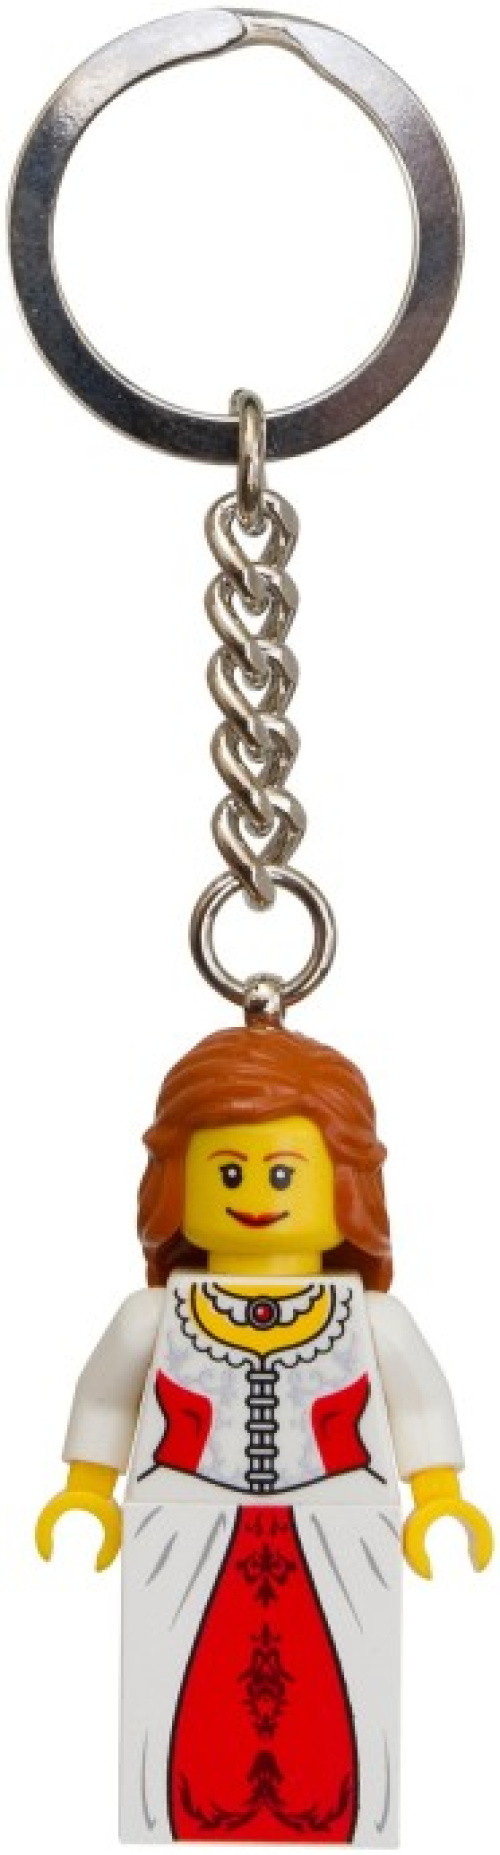 852912-1 Princess Key Chain